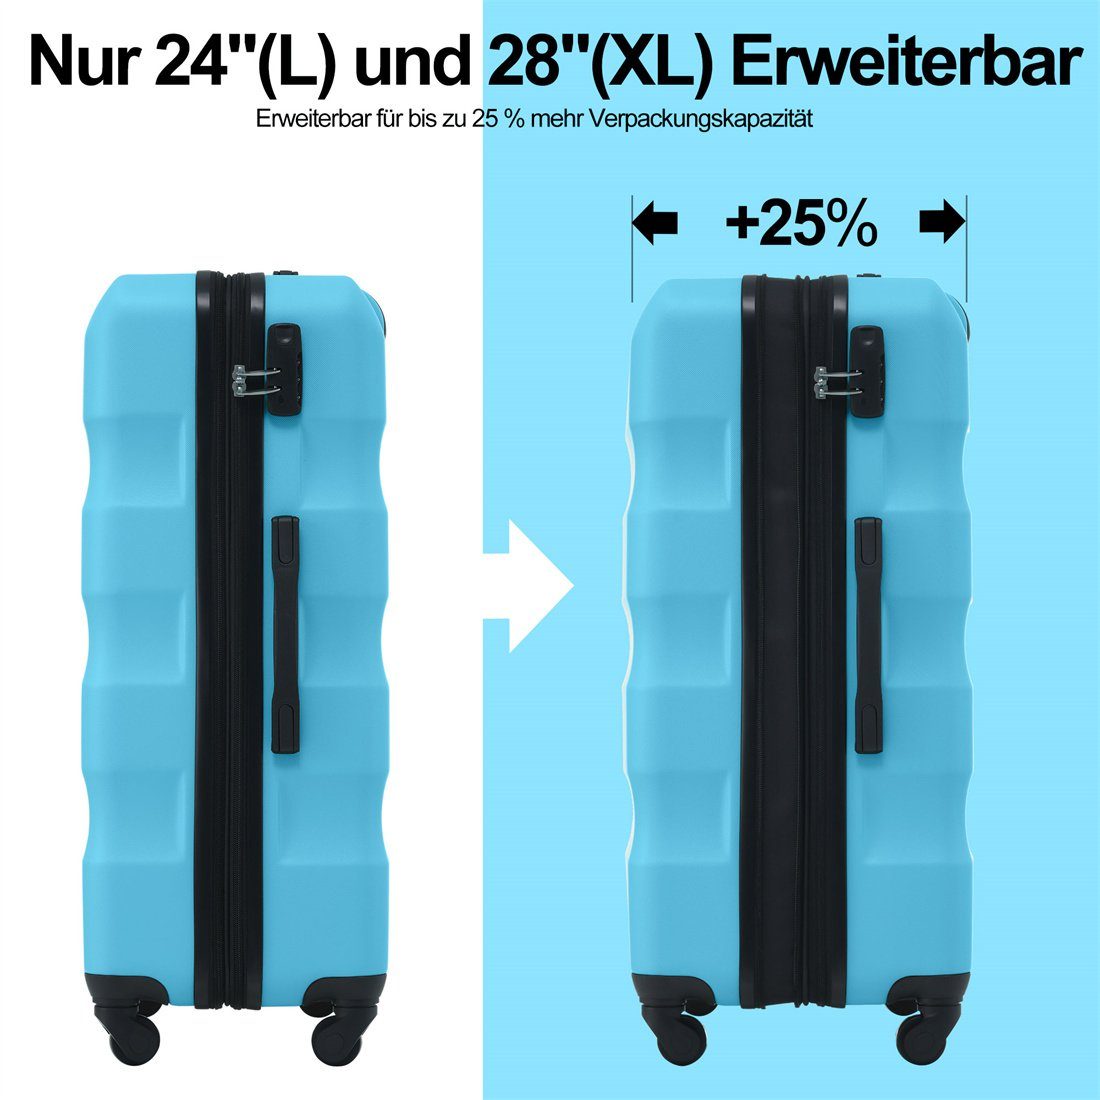 DÖRÖY Koffer 69*44.5*26.5cm, Hartschalen-Koffer, ABS-Material Reisekoffer, azurblau